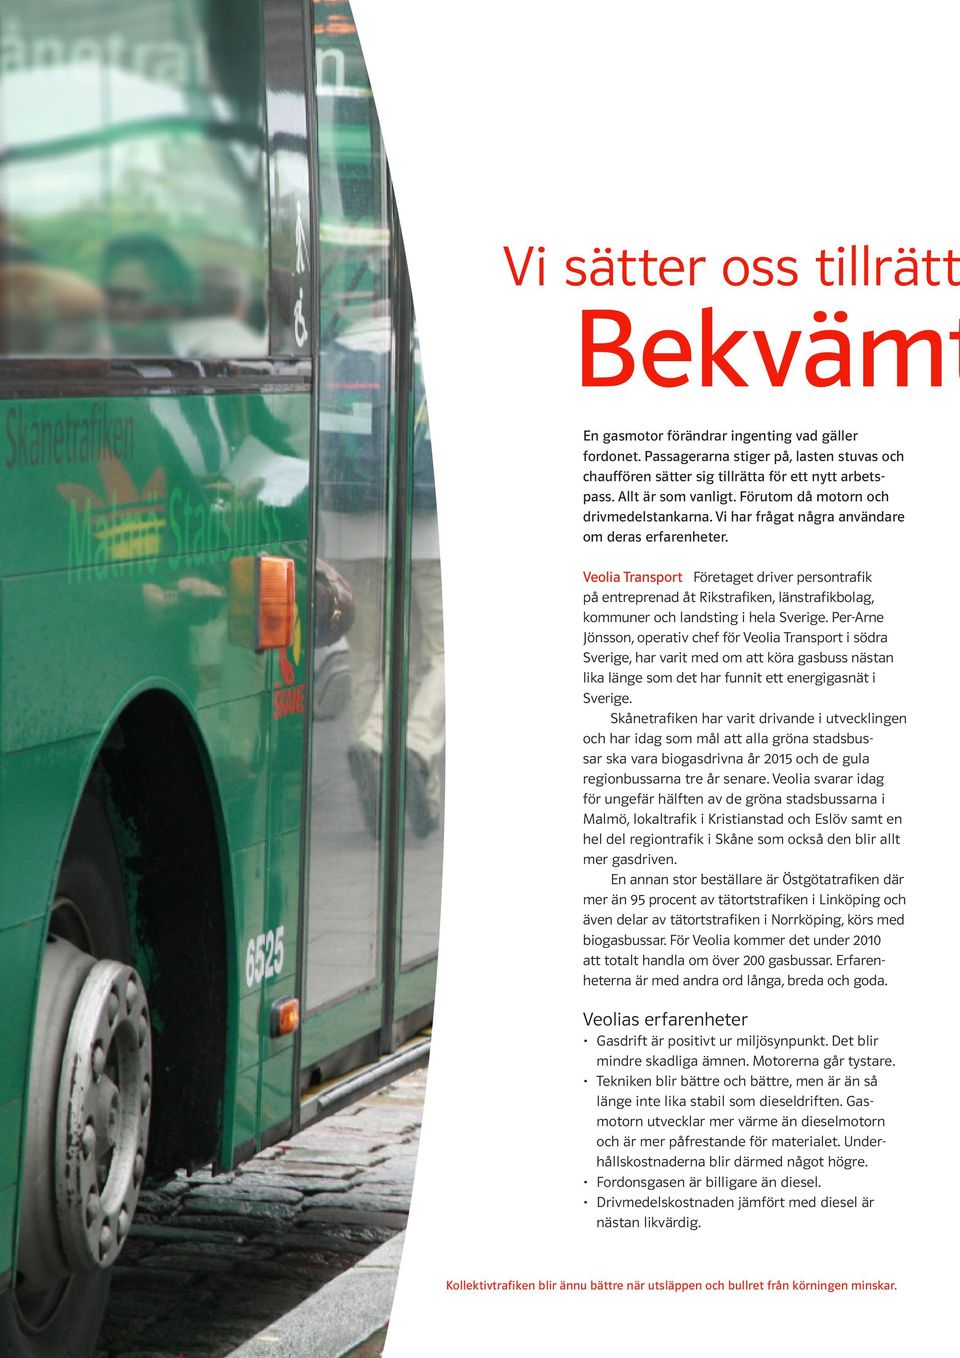 Veolia Transport Företaget driver persontrafik på entreprenad åt Rikstrafiken, länstrafikbolag, kommuner och landsting i hela Sverige.